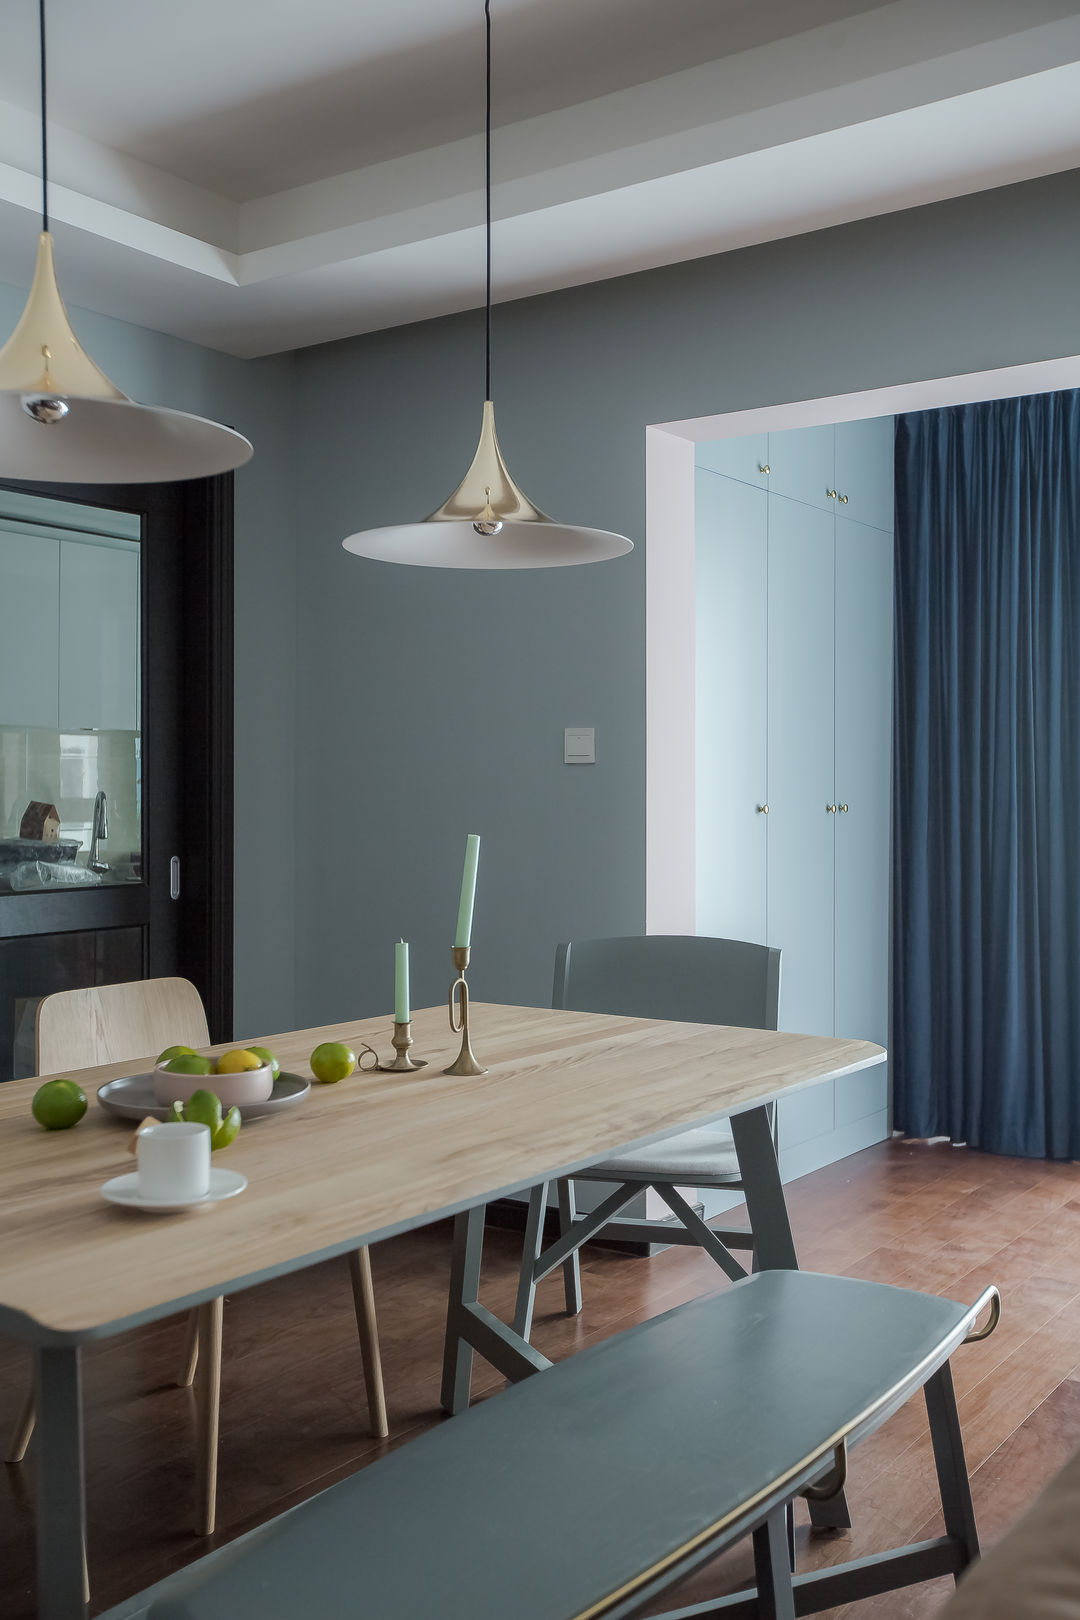 灰蓝色的窗帘与家具相呼应,让空间的配色和谐而更有层次感